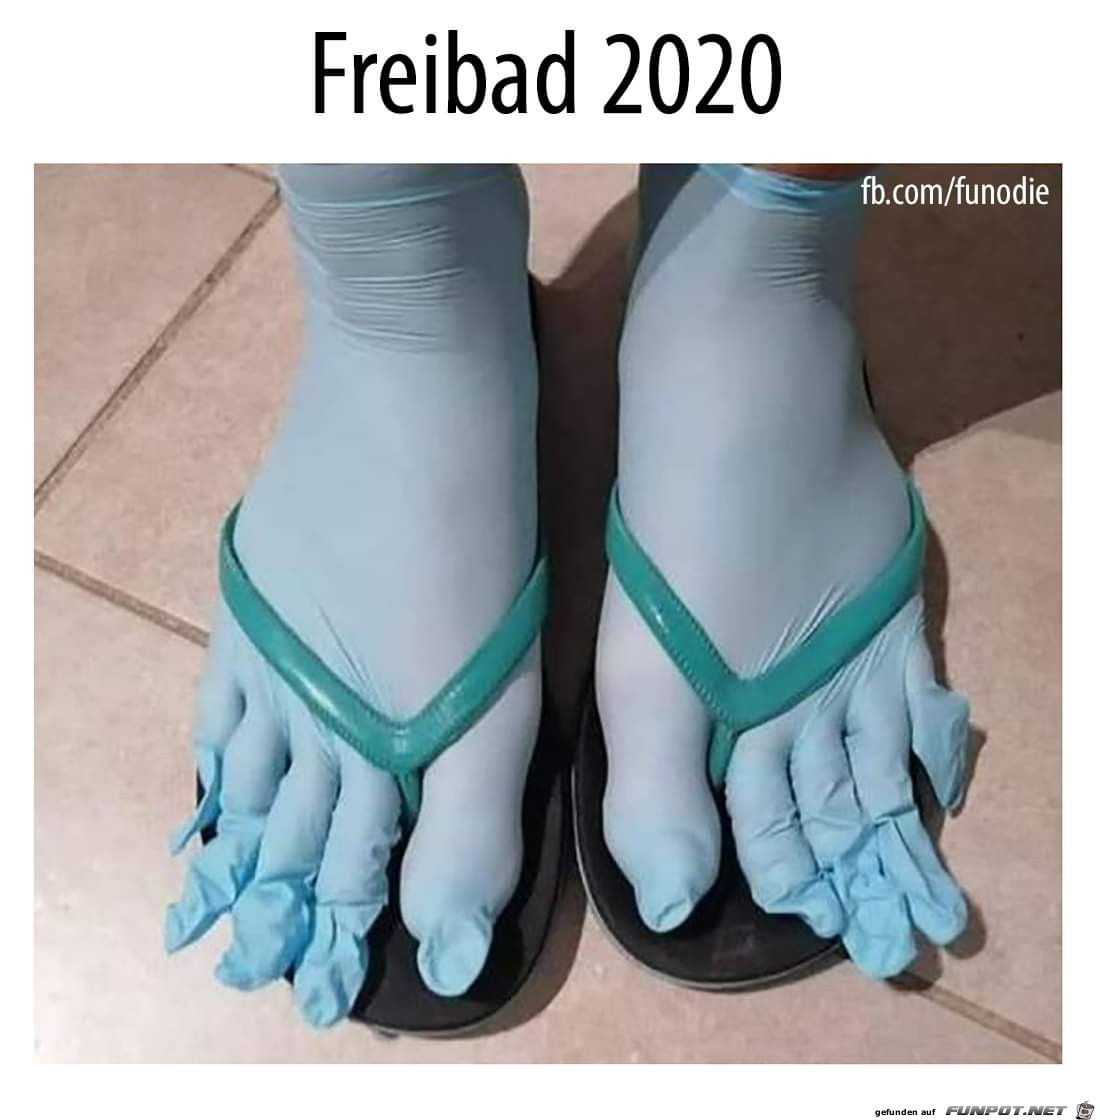 Freibad 2020